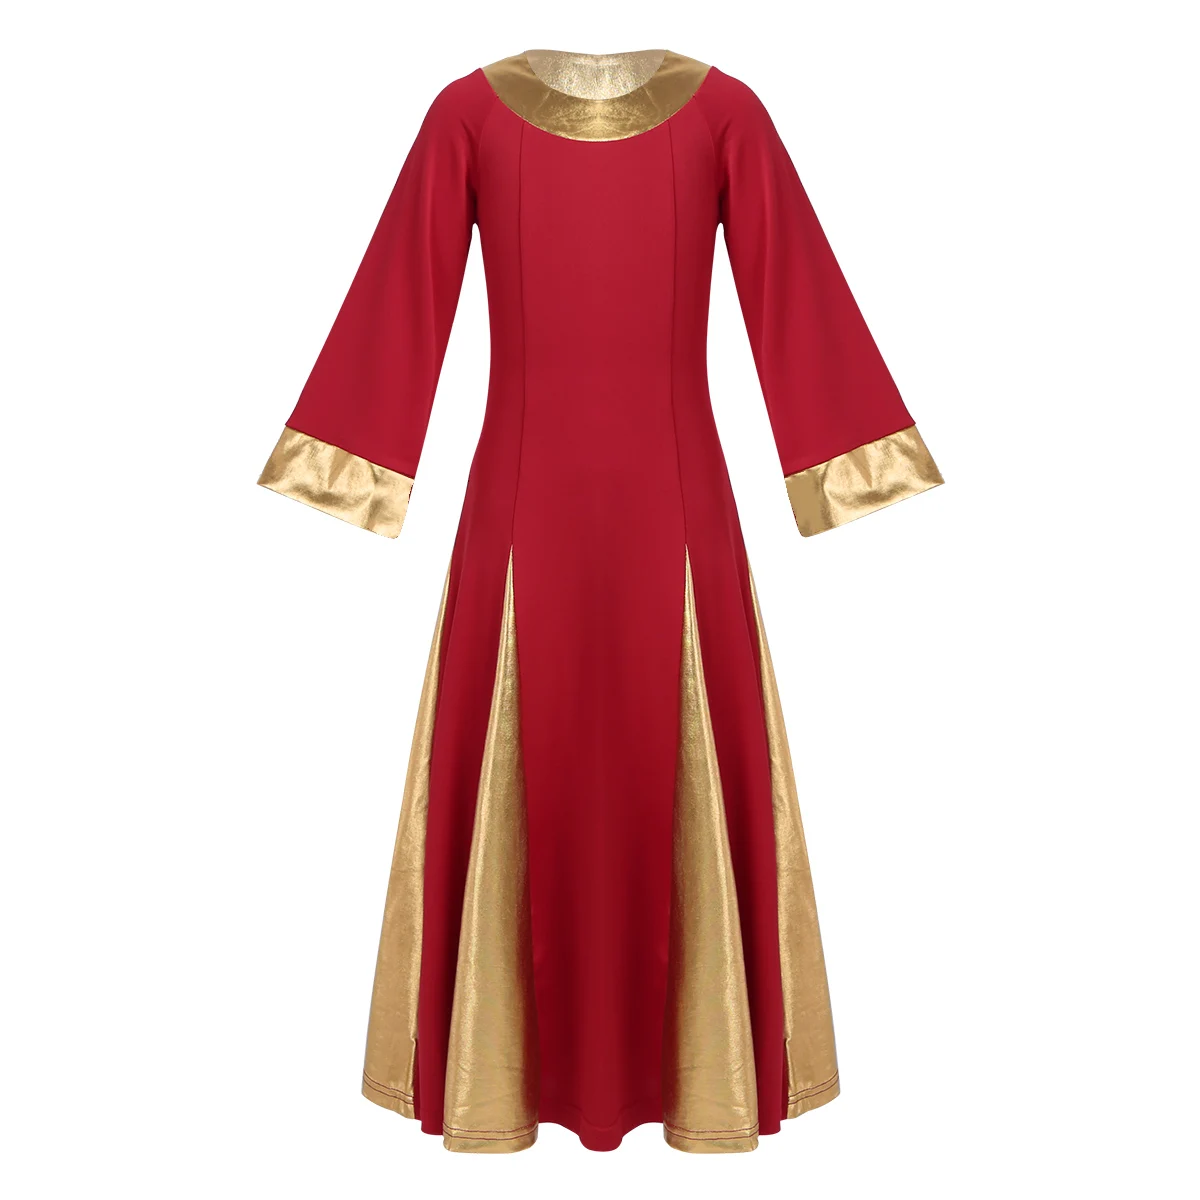 Iiniim/танцевальное платье-пачка для девочек; детское платье с длинными рукавами и металлическим воротником; платье для праздника; платье для танцев - Цвет: Red